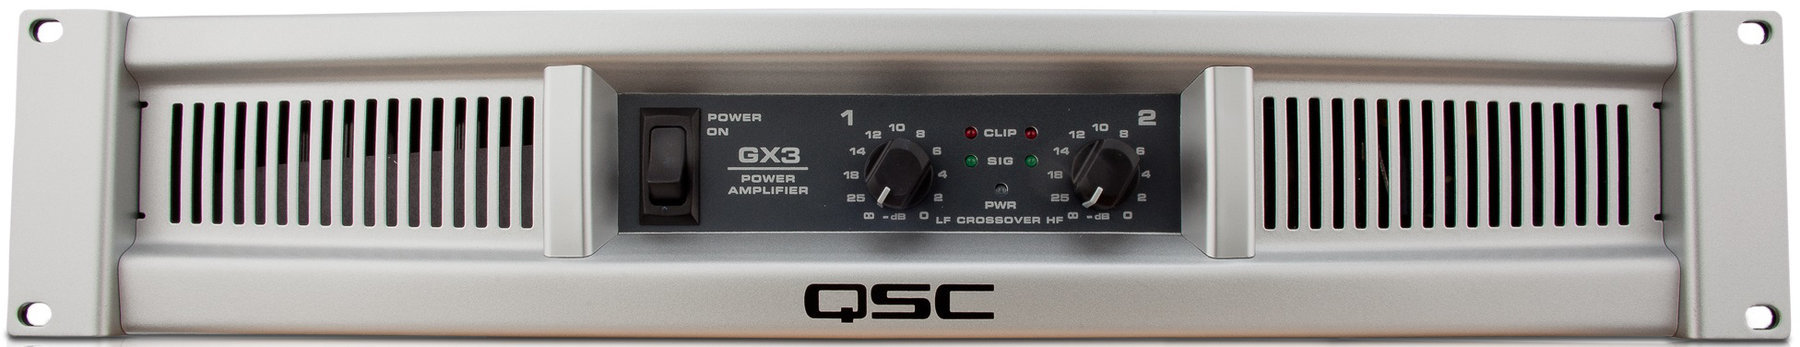 Amplificador de potência QSC GX3 Amplificador de potência